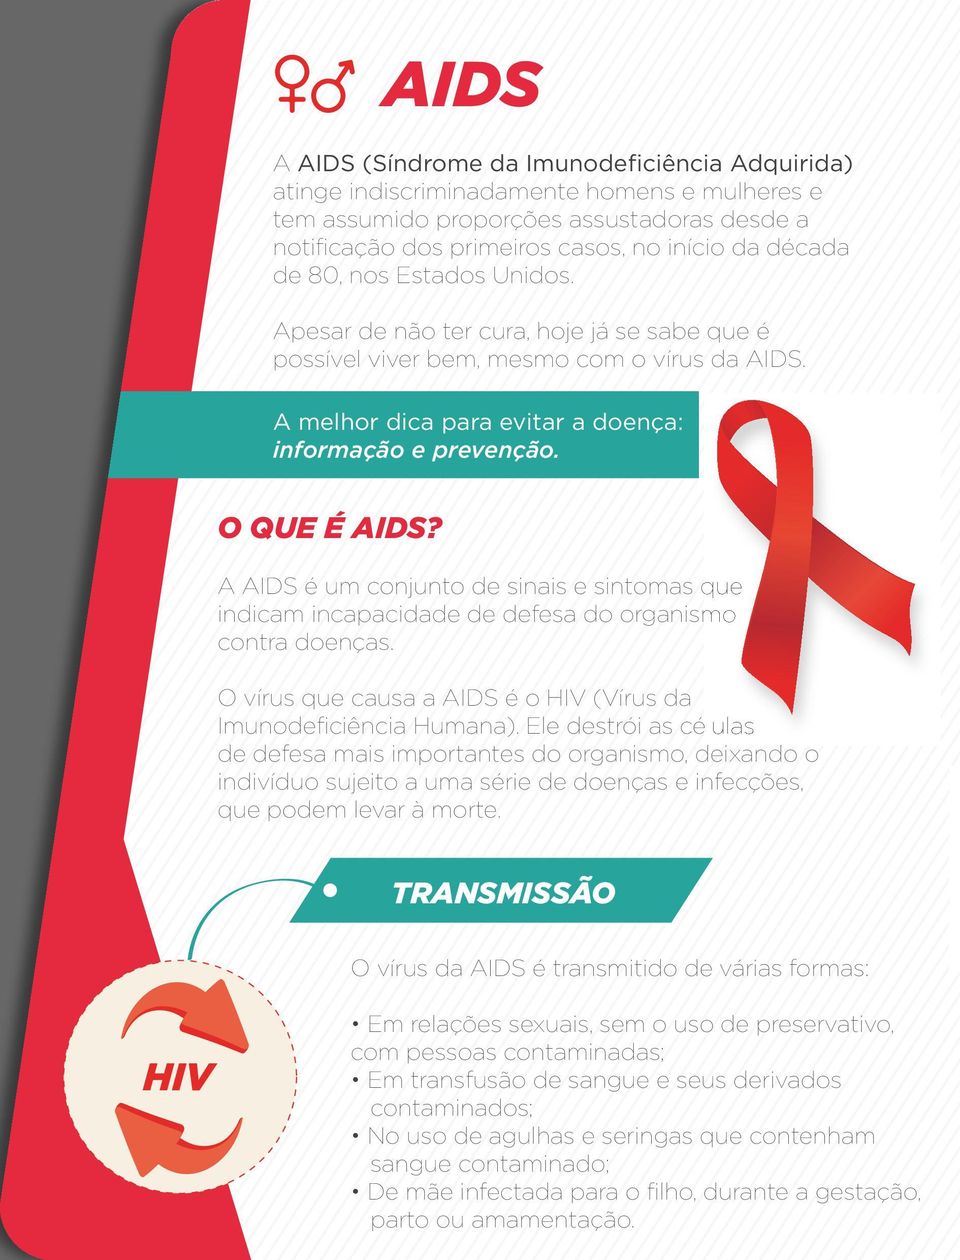 A AIDS é um conjunto de sinais e sintomas que indicam incapacidade de defesa do organismo contra doenças. O vírus que causa a AIDS é o HIV (Vírus da Imunodeficiência Humana).